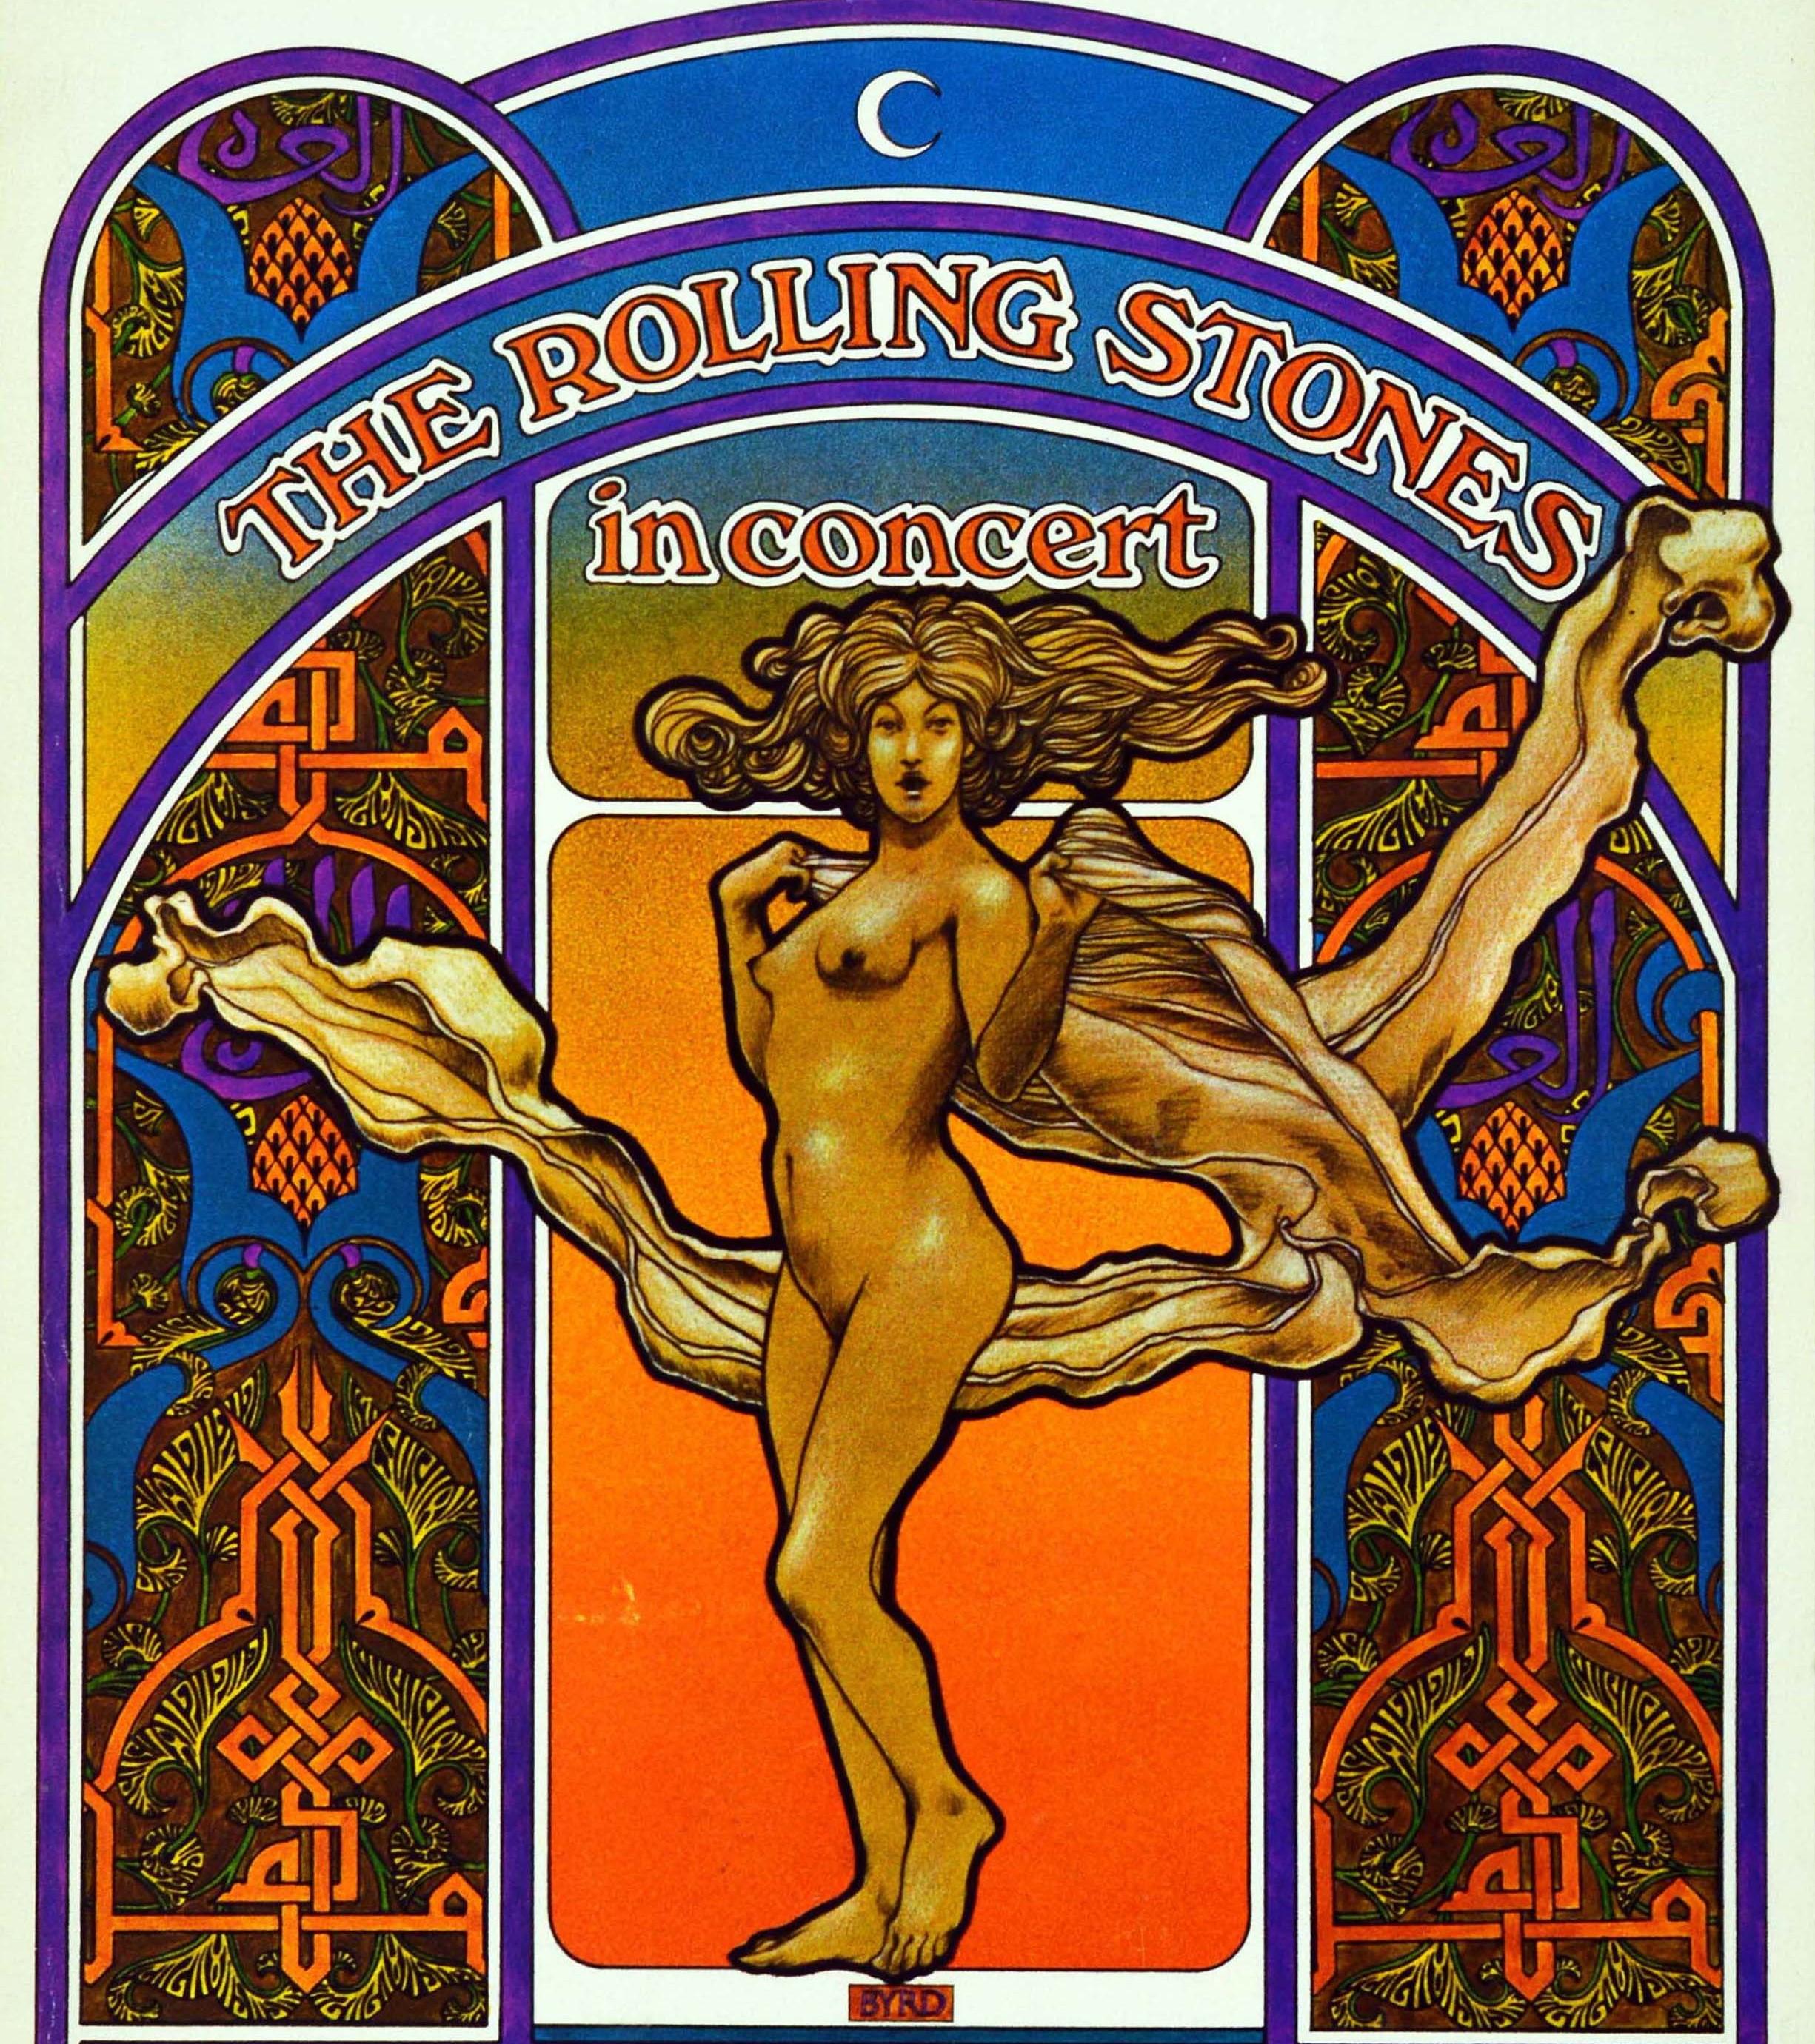 Affiche originale de la tournée mondiale 1969-1970 des Rolling Stones in Concert. L'image aux couleurs vives du célèbre graphiste américain David Edward Byrd (né en 1941) représente une figure de style Art nouveau aux cheveux flottants au centre,